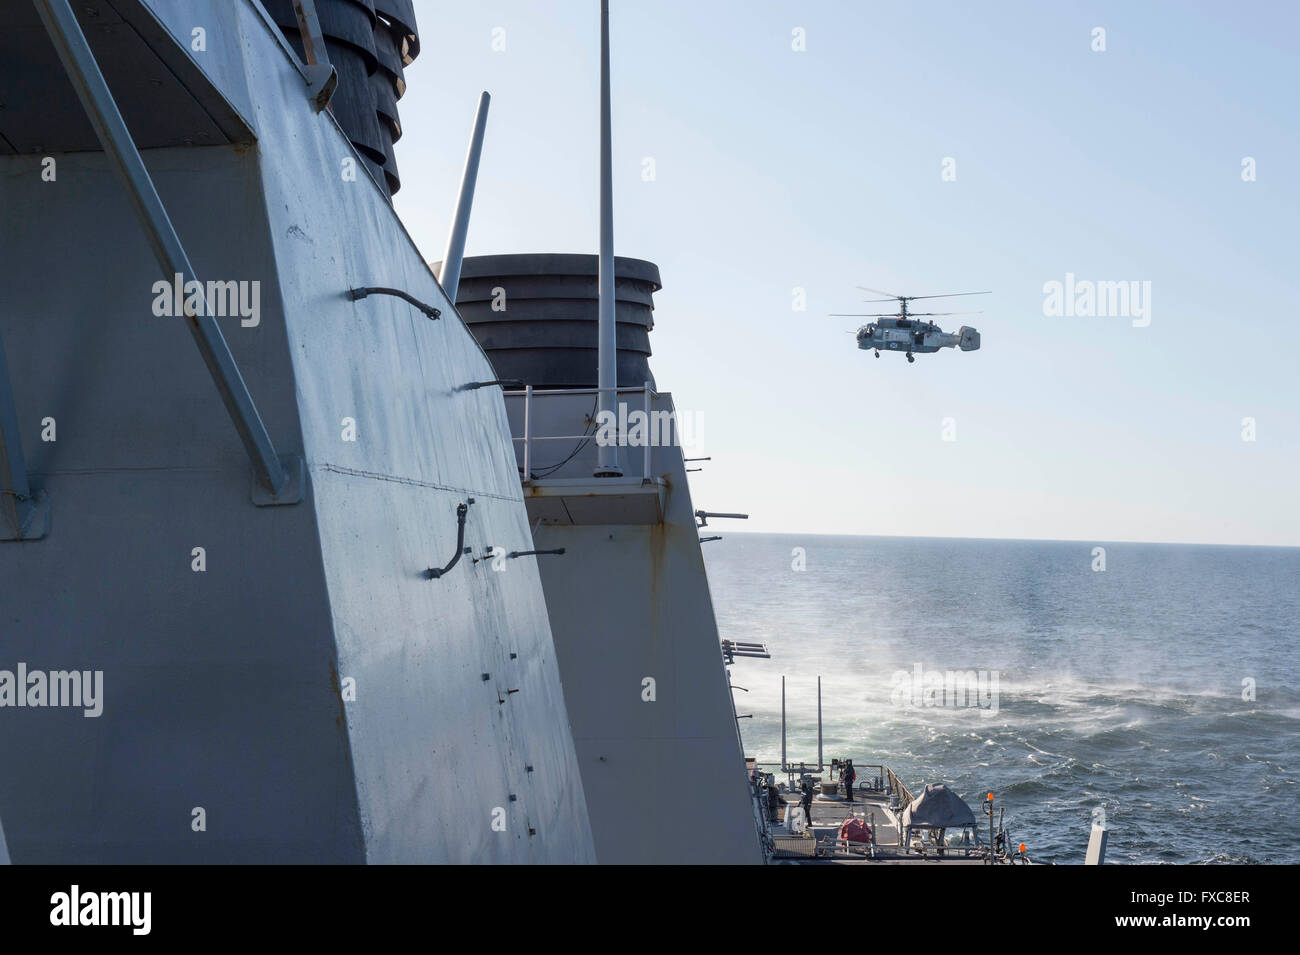 Un russe Kamov KA-27 HELIX hélicoptère est un très faible altitude passent au-dessus de l'U.S Navy de la classe Arleigh Burke destroyer lance-missiles USS Donald Cook lors d'une patrouille le 12 avril 2016 dans la mer Baltique. Les manœuvres de vol agressive par l'avion russe simulé un mitraillage. Banque D'Images